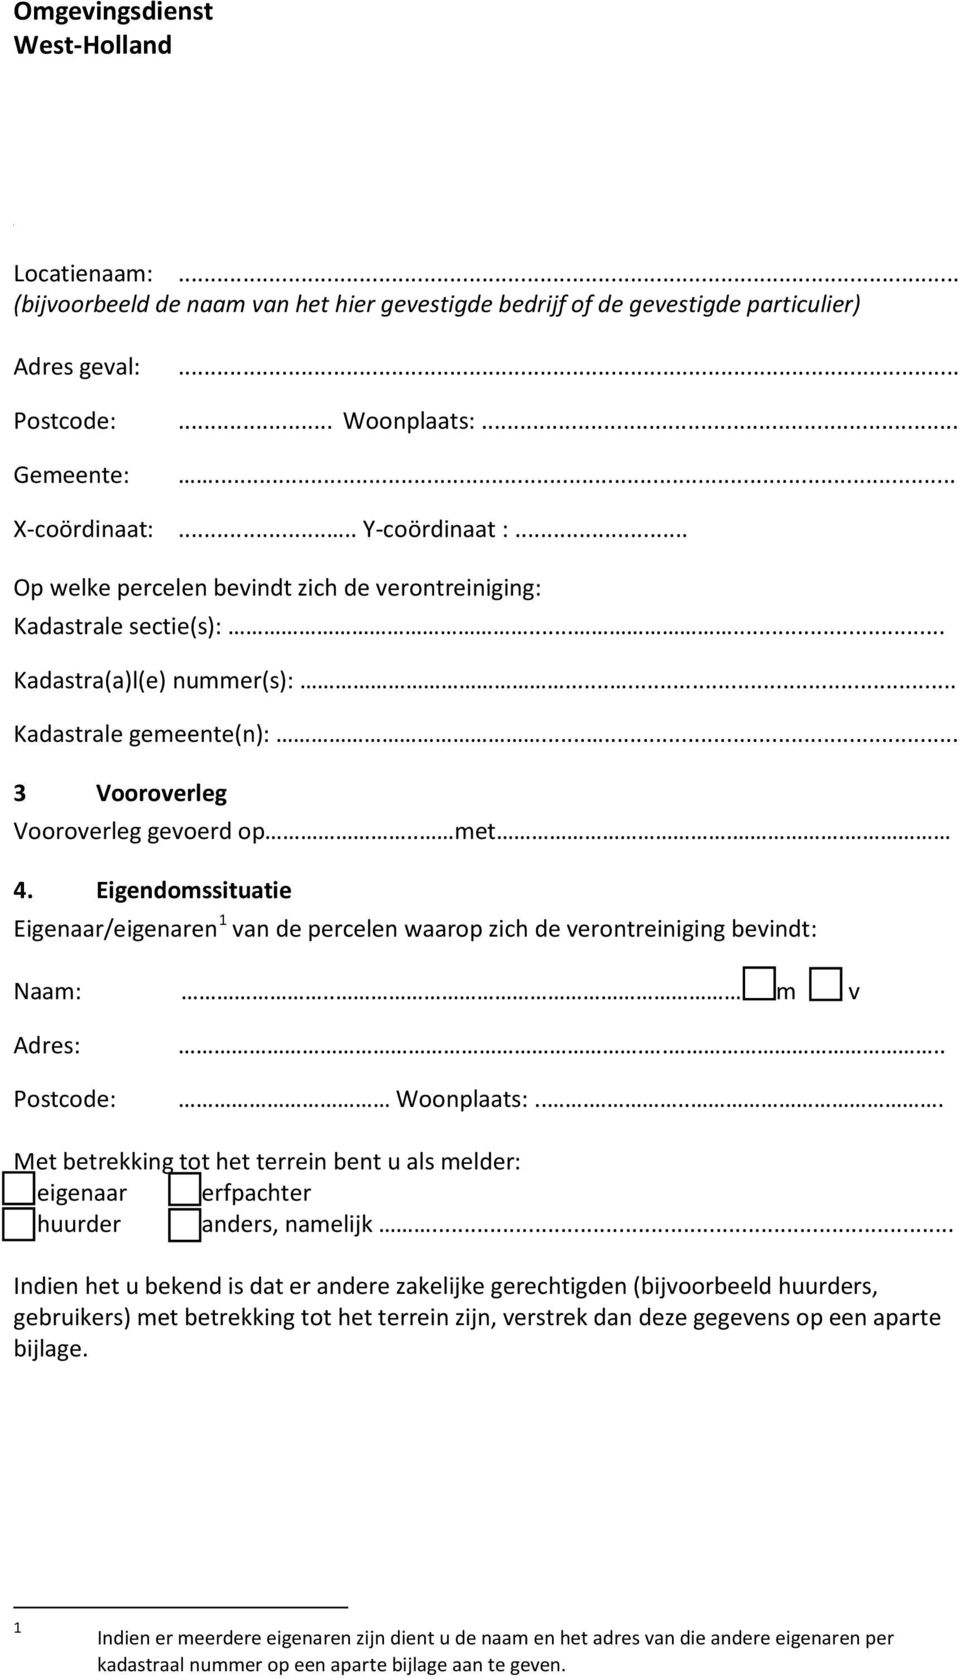 Eigendomssituatie Eigenaar/eigenaren 1 van de percelen waarop zich de verontreiniging bevindt: Naam:.. m v Adres: Postcode:.... Woonplaats:.